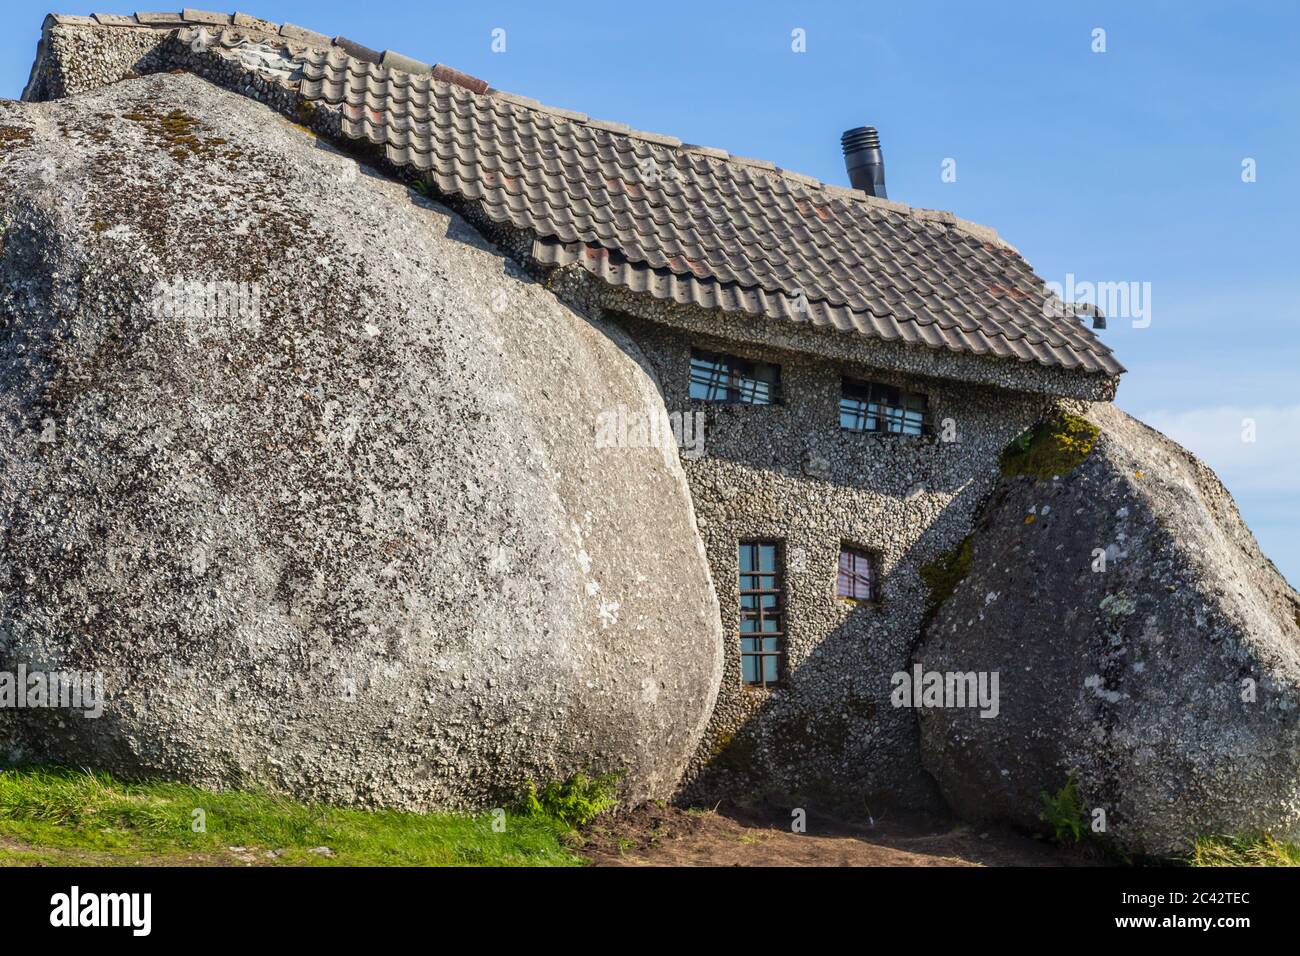 Casa do Penedo, una casa construida entre enormes rocas en la cima de una  montaña en Fafe, Portugal. Comúnmente considerada una de las casas más  extrañas del mundo Fotografía de stock -